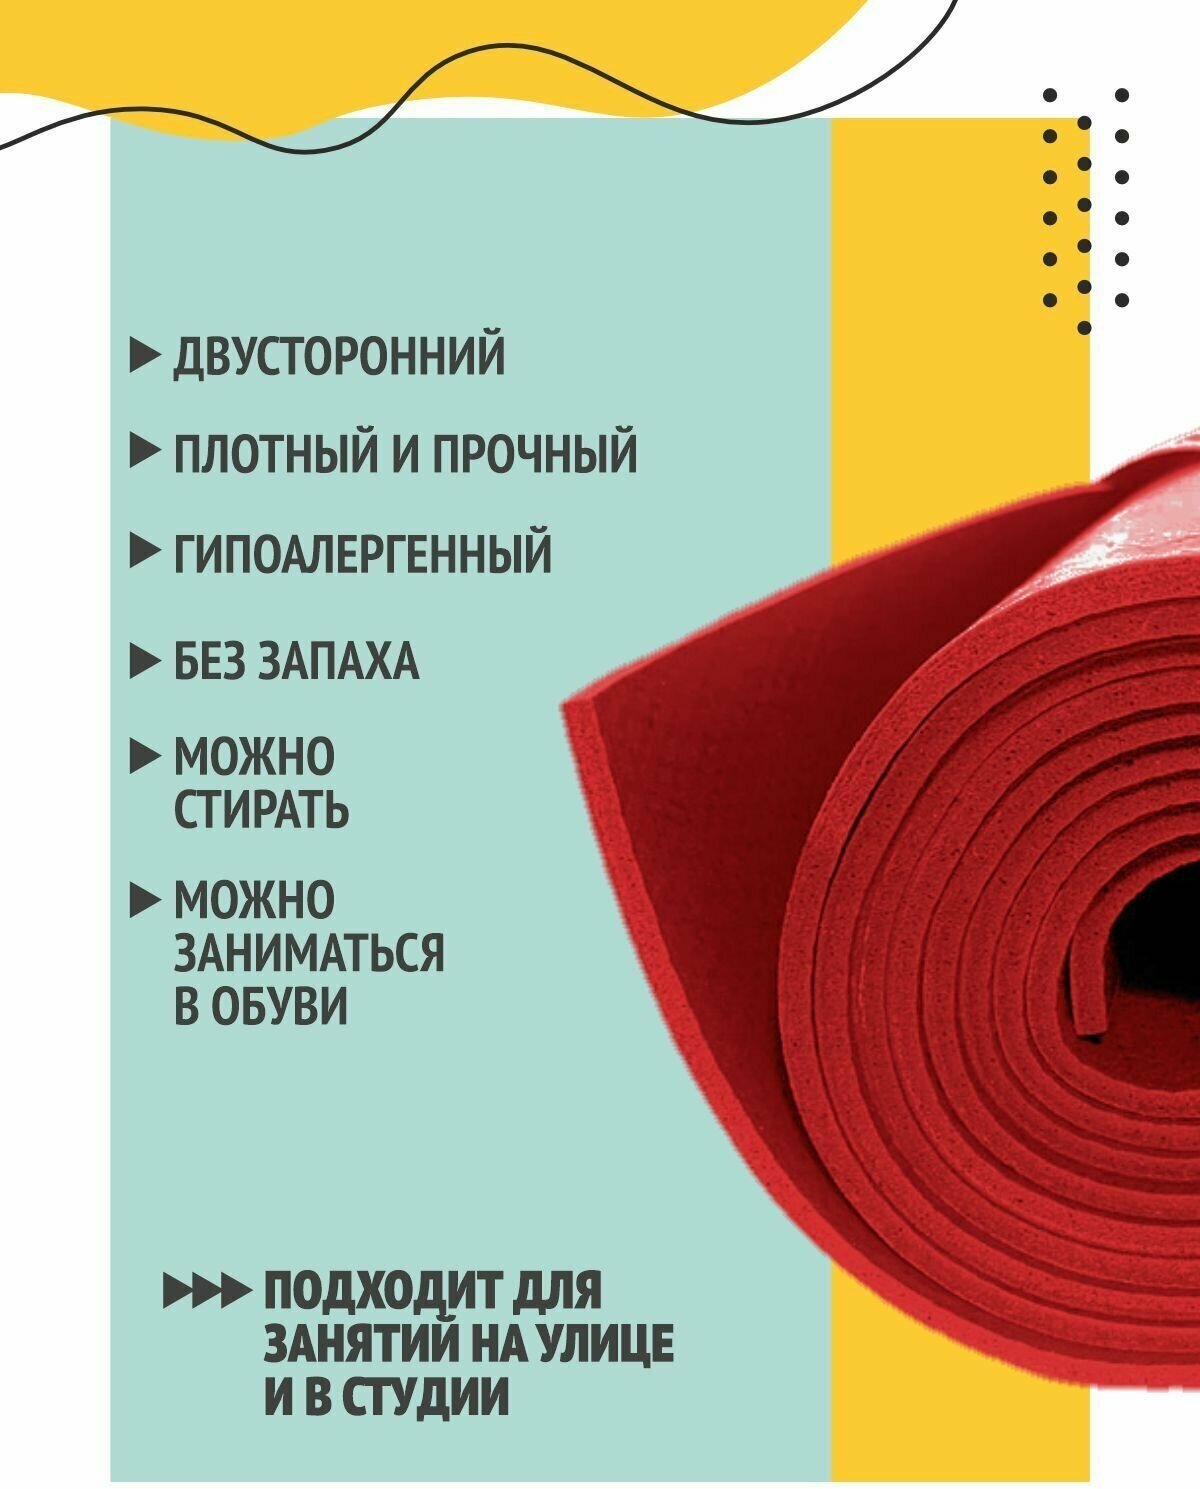 Коврик для йоги фитнеса пилатеса гимнастики нескользящий прочный по немецкой технологии, красный, 183 х 60 х 0,4 см